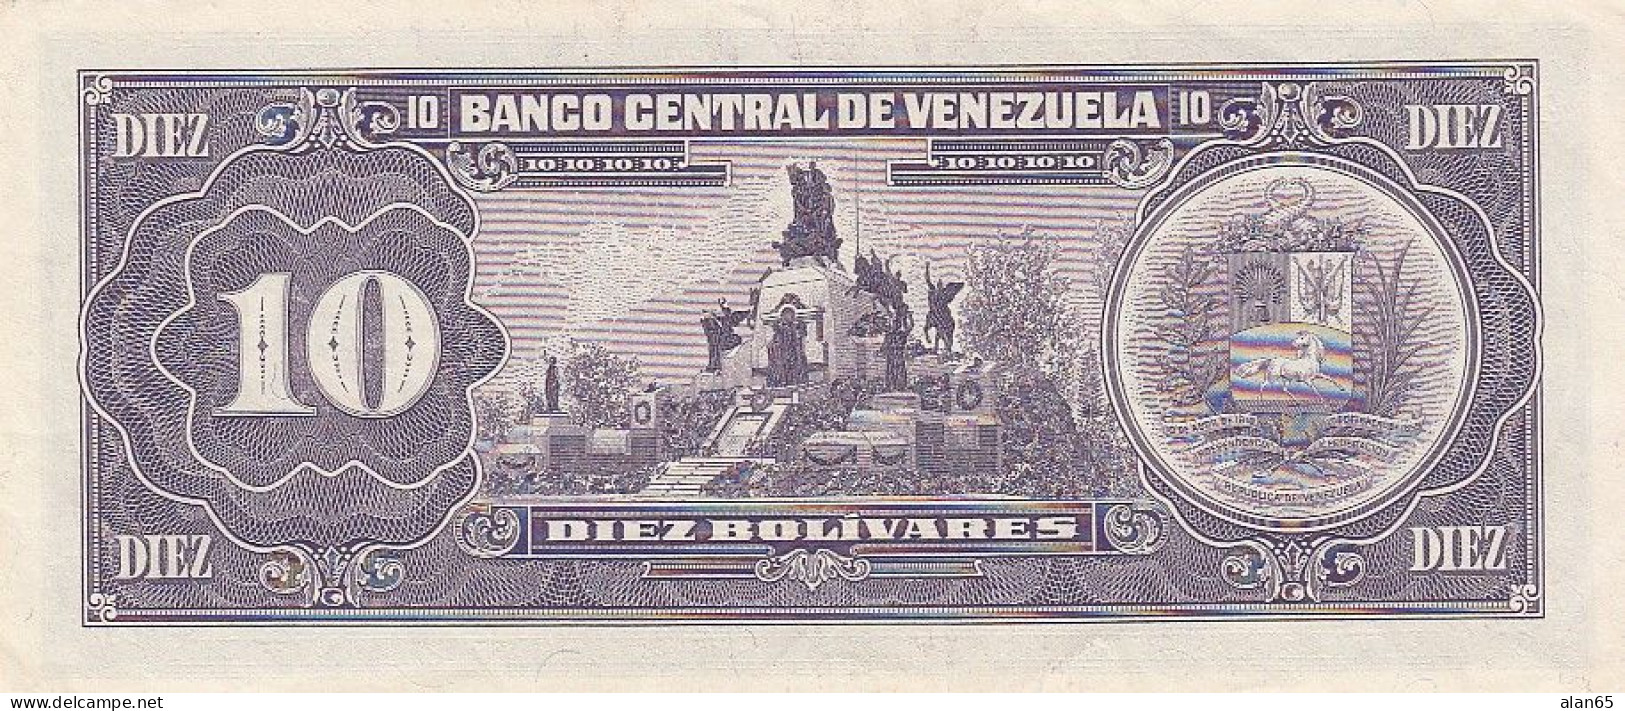 Venezuela #61b, 10 Bolivares, 1990 Banknote - Venezuela